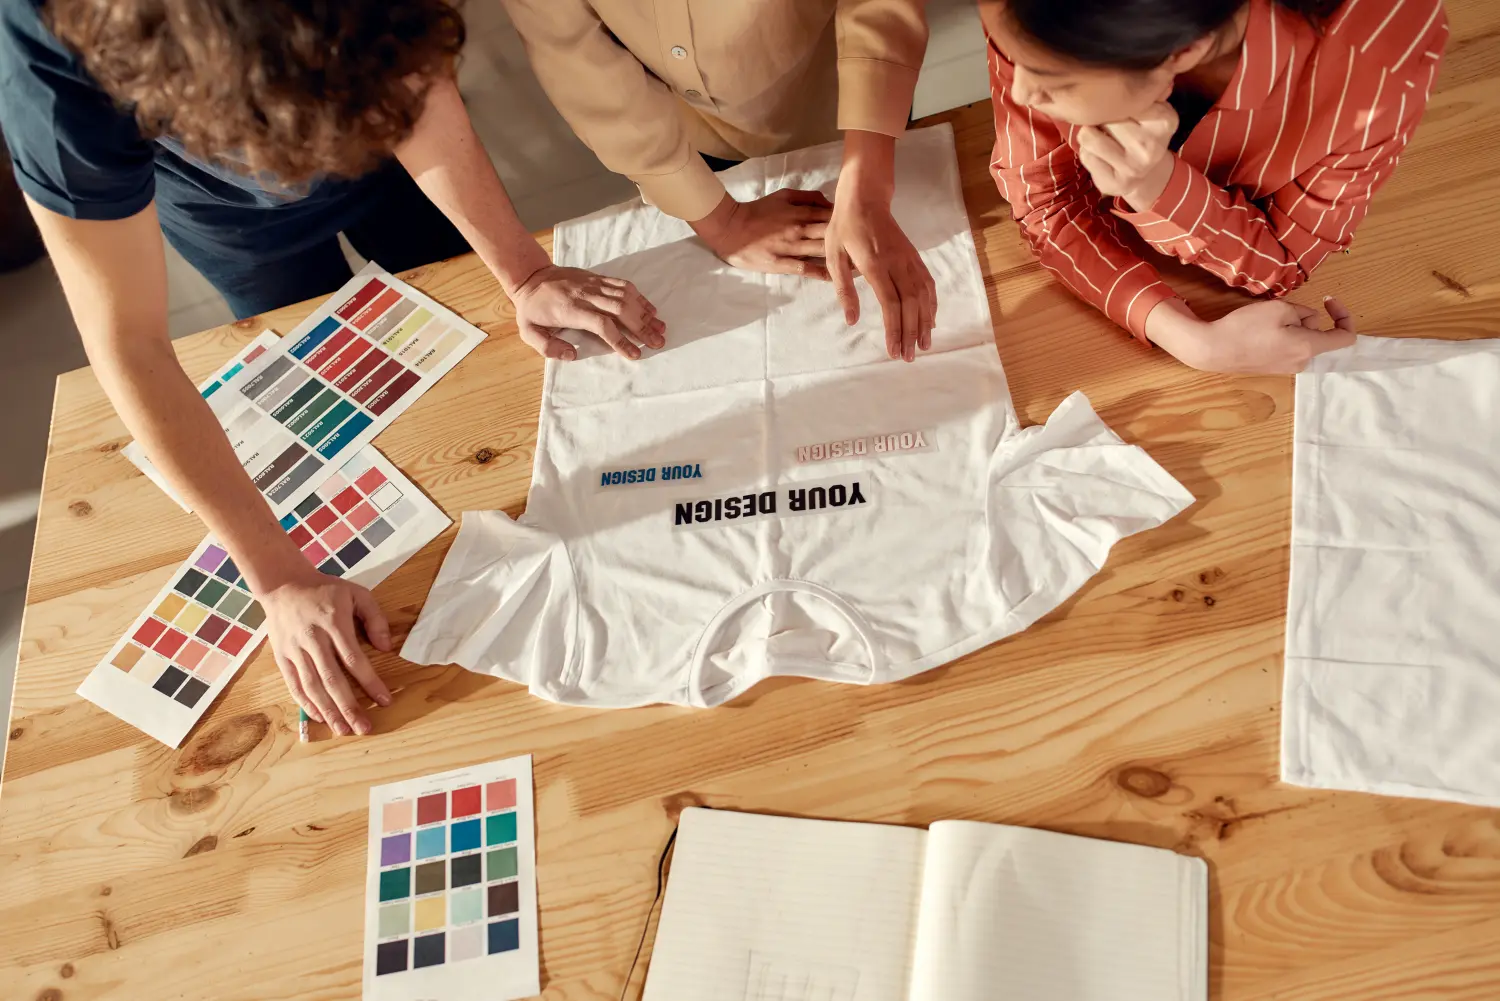 PB Werbeartikel, Textilien mit Druck oder Stick, Schreiben für Ihren Erfolg. Kreative Menschen probieren Aufkleber mit Text an, während sie über Logo und Design von T-Shirts diskutieren. Junger Mann und Frauen arbeiten zusammen in einer Druckerei für individuelle T-Shirts, Kleidung